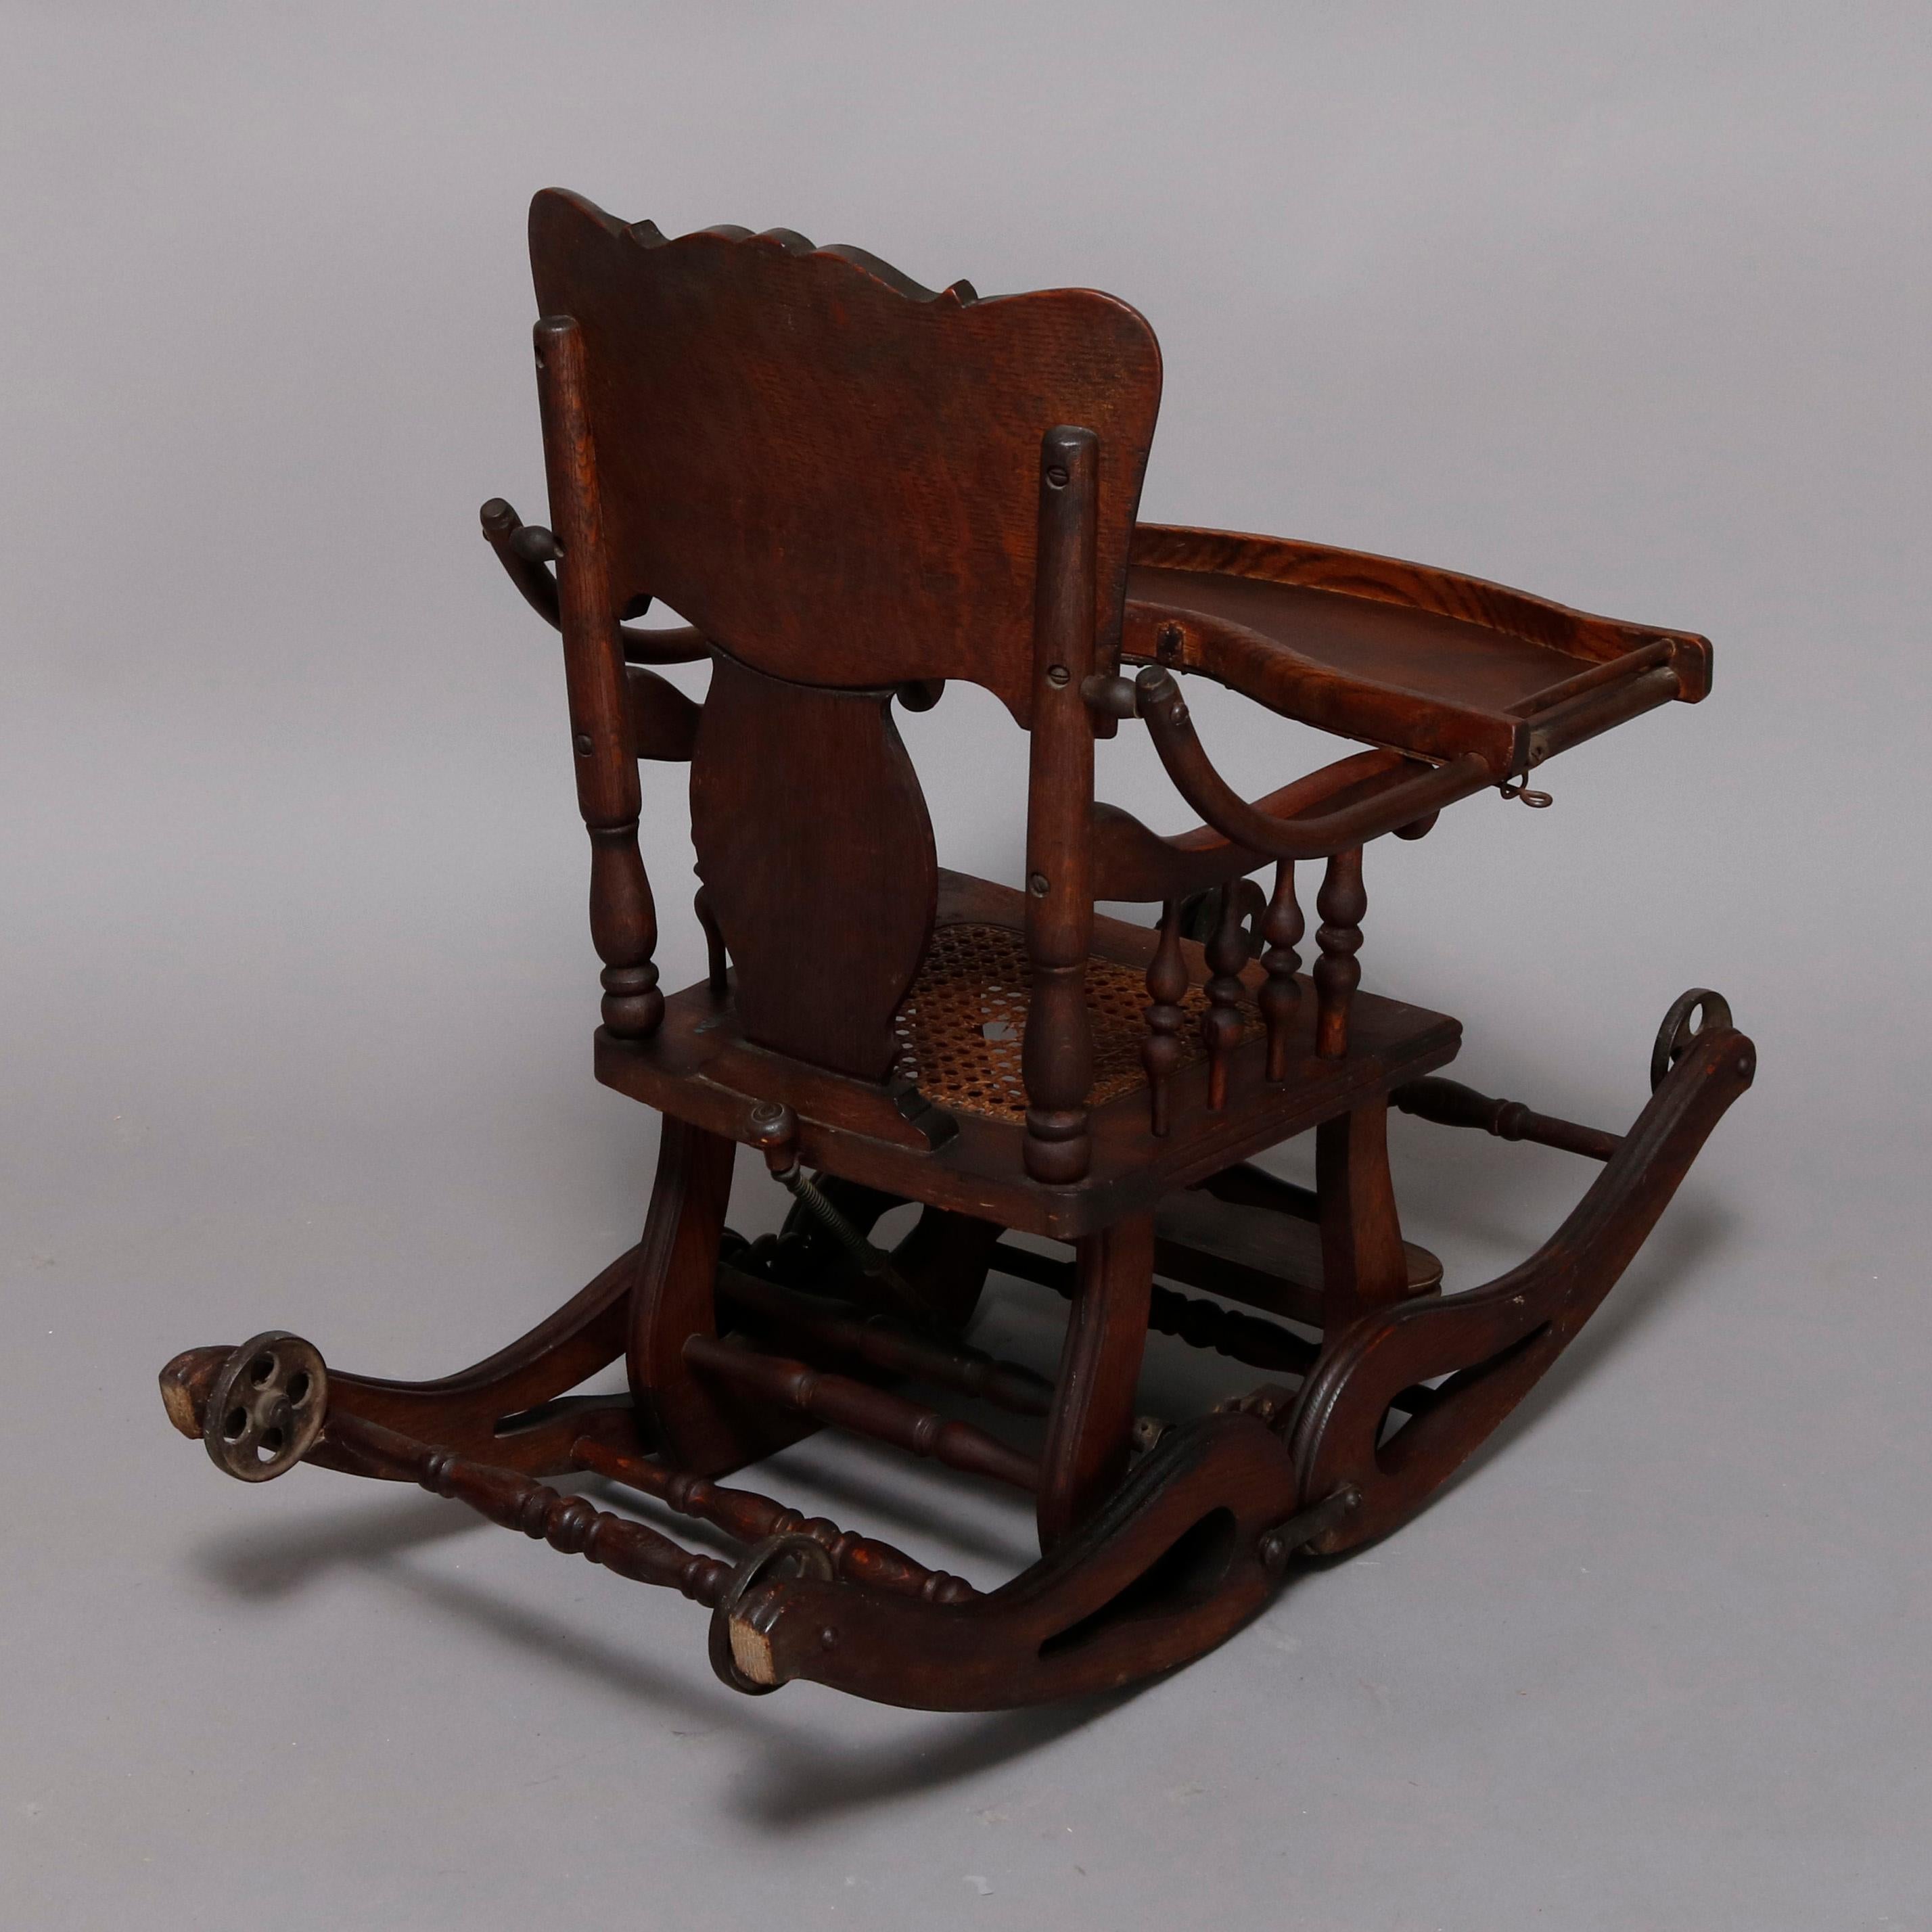 antique high chair/rocker combination